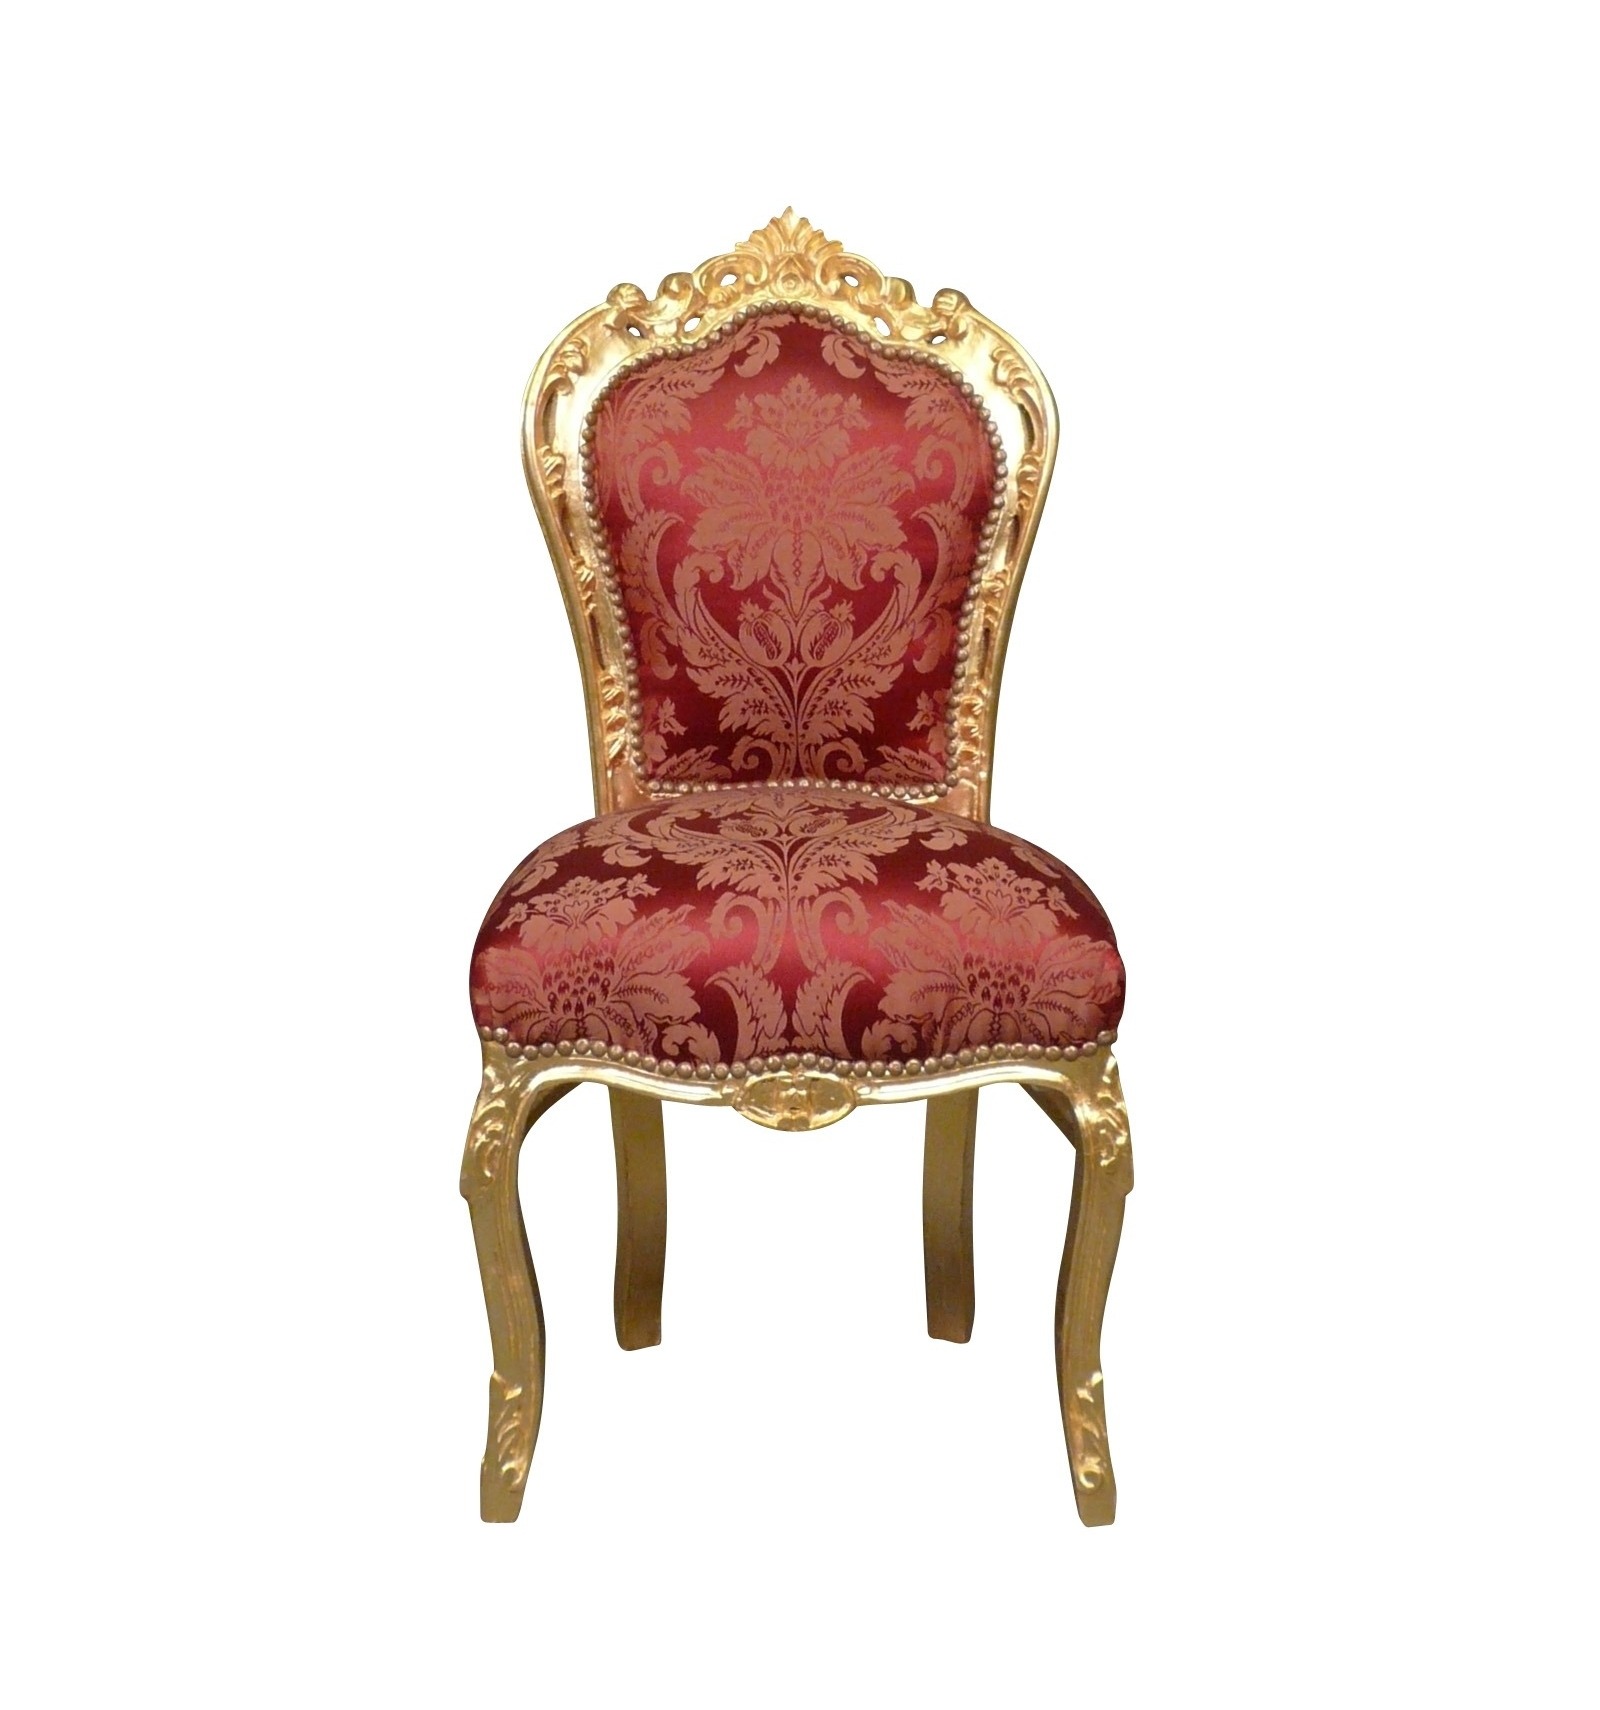 Specialist Ontmoedigd zijn Zeeanemoon Red baroque and gilded wood chair - Baroque chairs